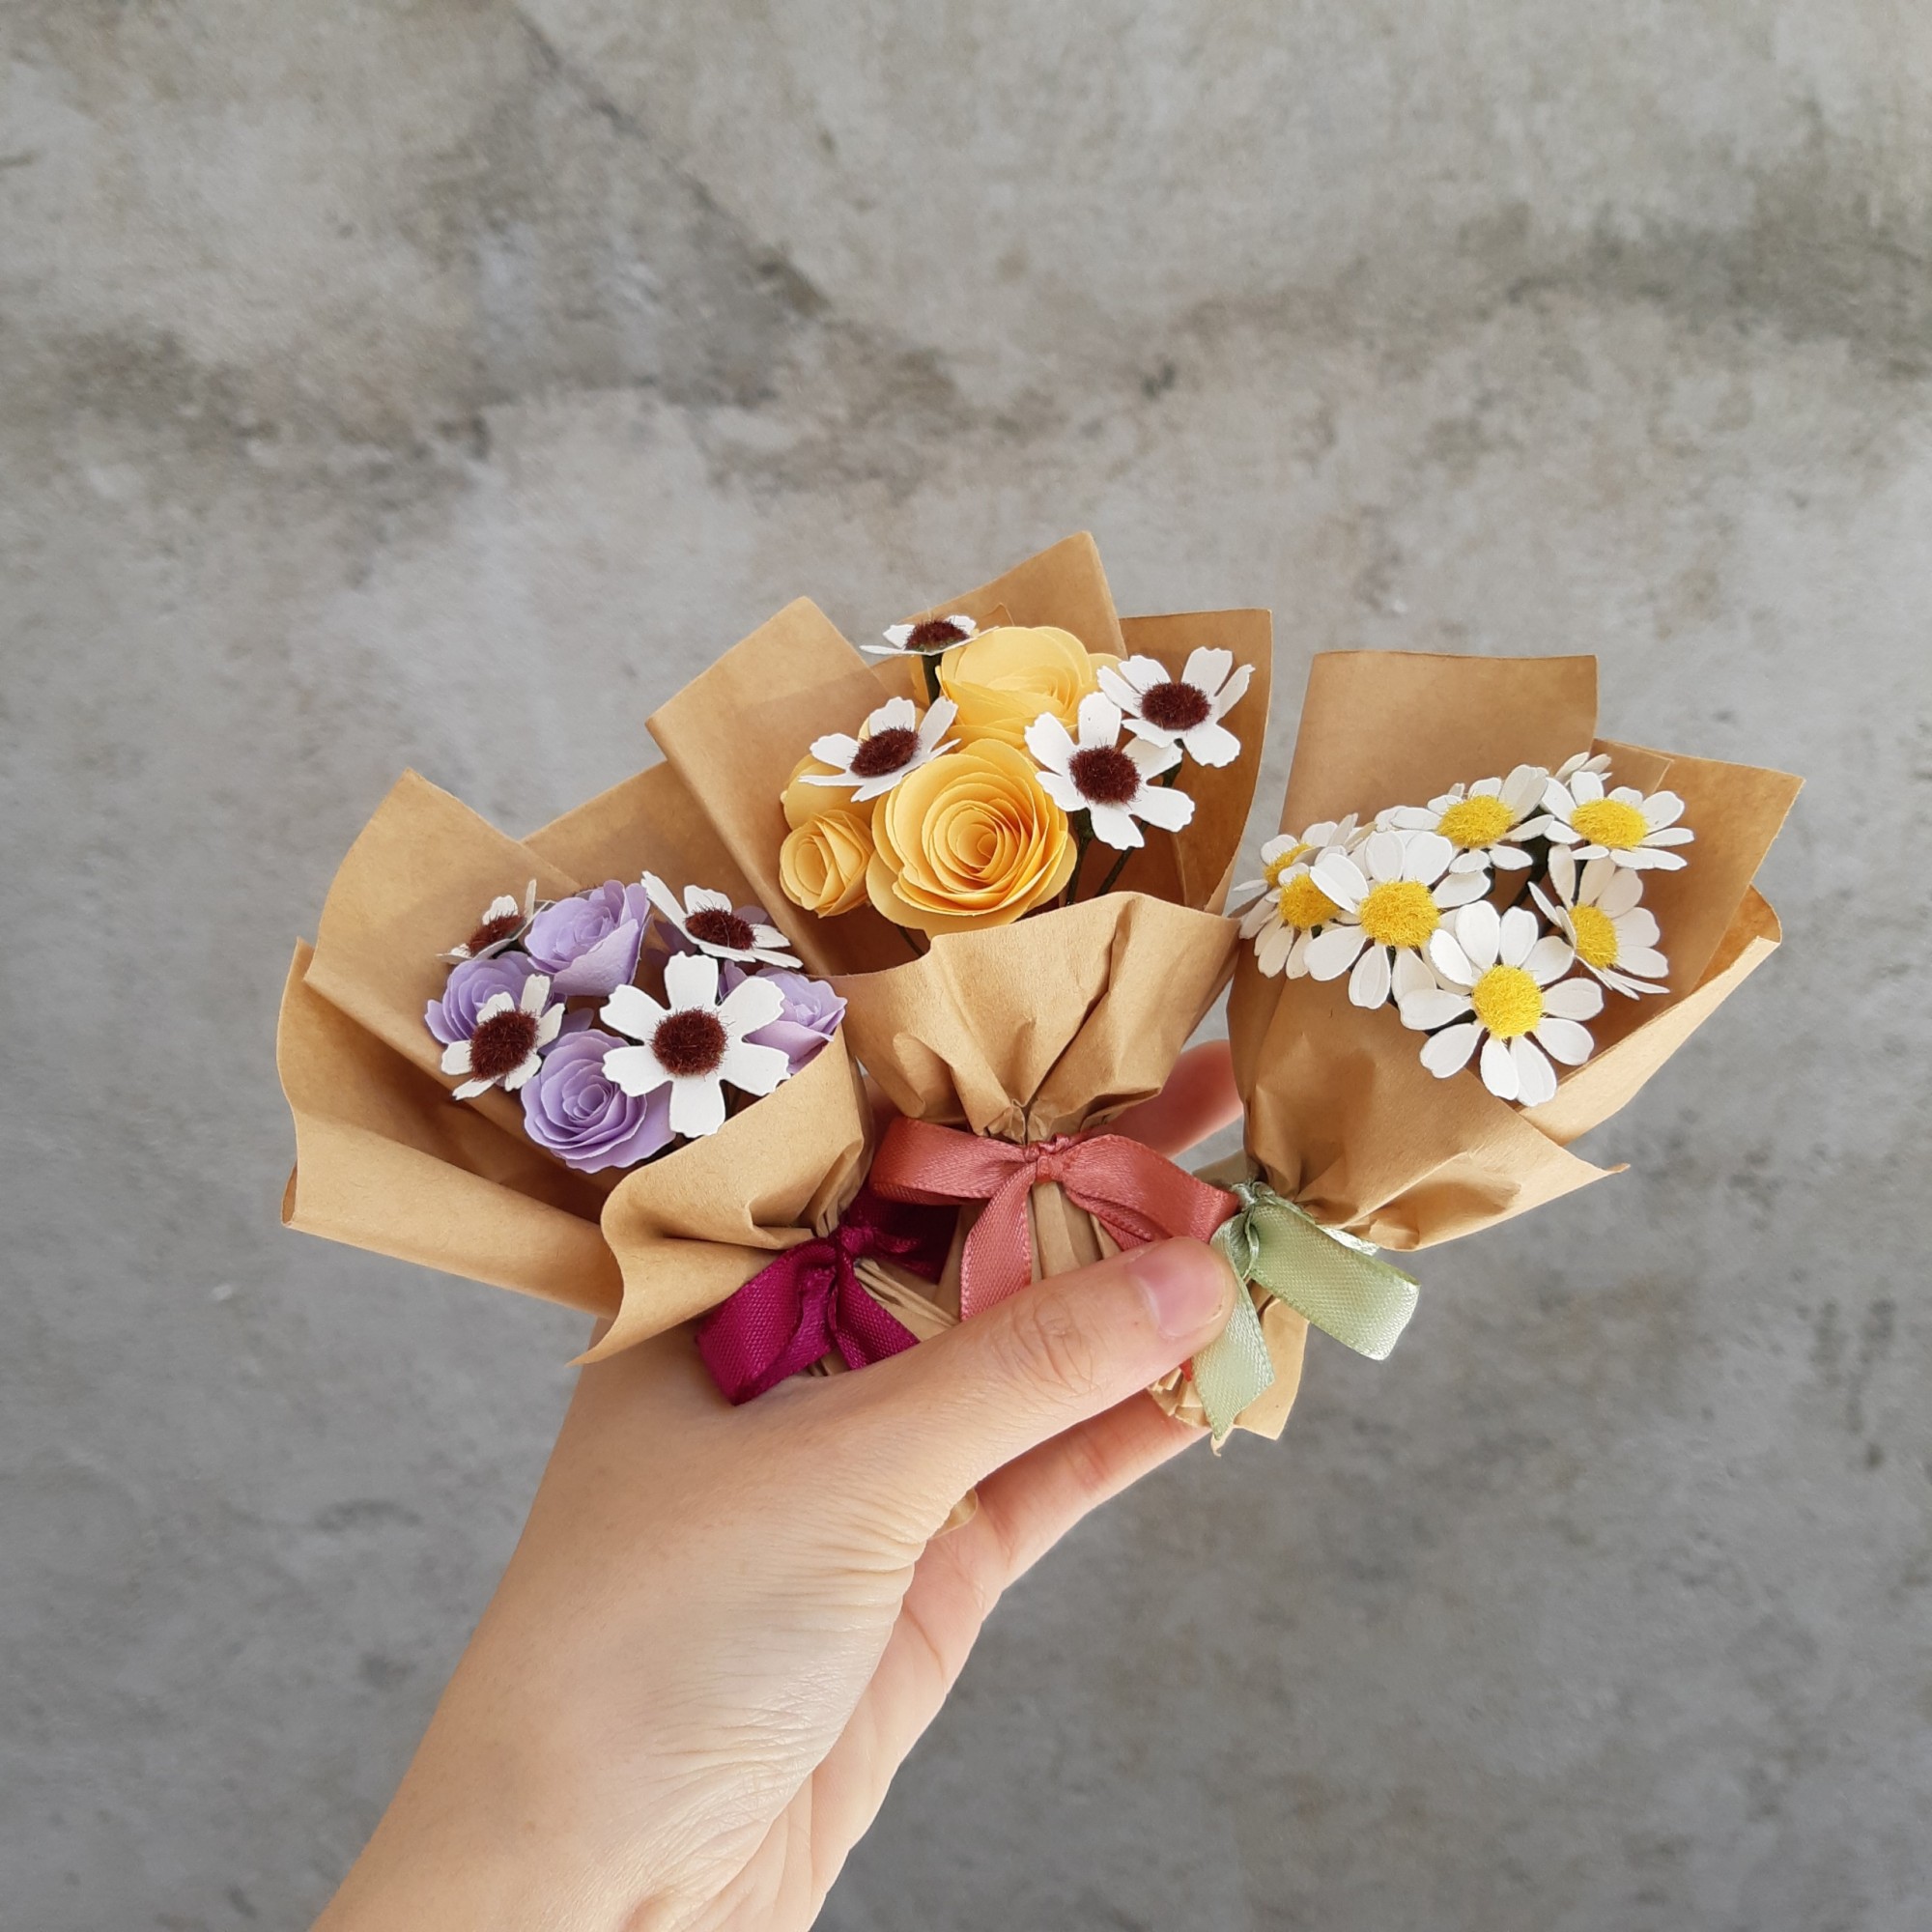 Bó hoa giấy mini - Fairy Corner: Bạn yêu thích những món đồ handmade và thủ công? Hãy đến Fairy Corner để chiêm ngưỡng những bó hoa giấy mini tinh xảo với nhiều màu sắc đa dạng. Nơi đây sẽ làm bạn phấn khích với những chiếc bó hoa giấy mini đầy sáng tạo và độc đáo, chắc chắn bạn sẽ tìm được một sản phẩm ưng ý cho riêng mình.